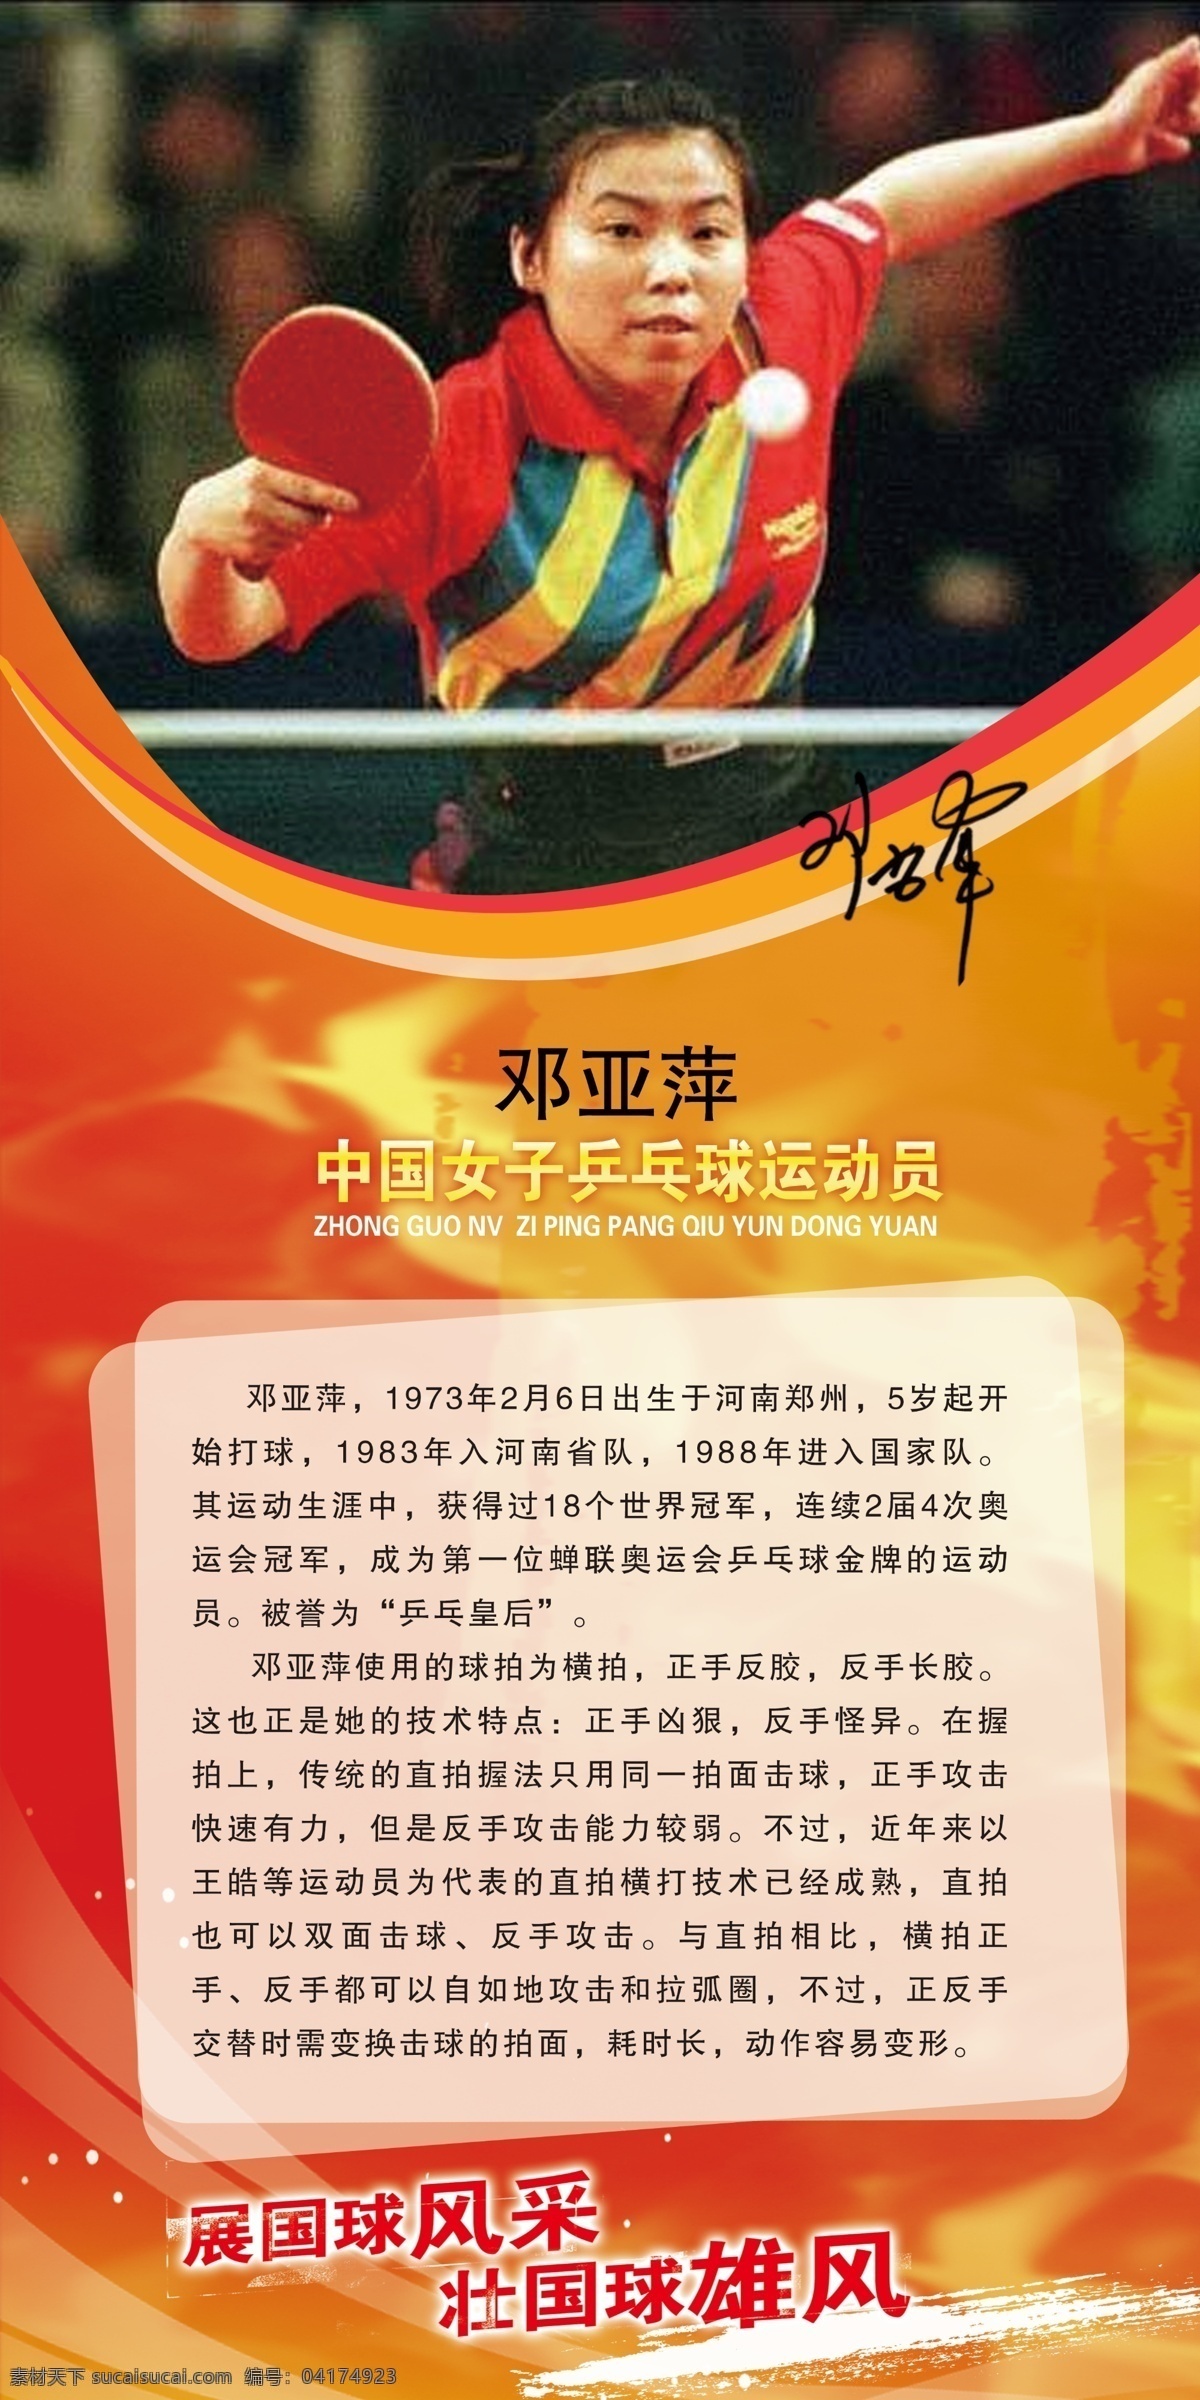 乒乓球 明星 展板 邓亚萍 运动健将 乒乓球室 乒乓球明星 运动展板 人物简介 展板模板